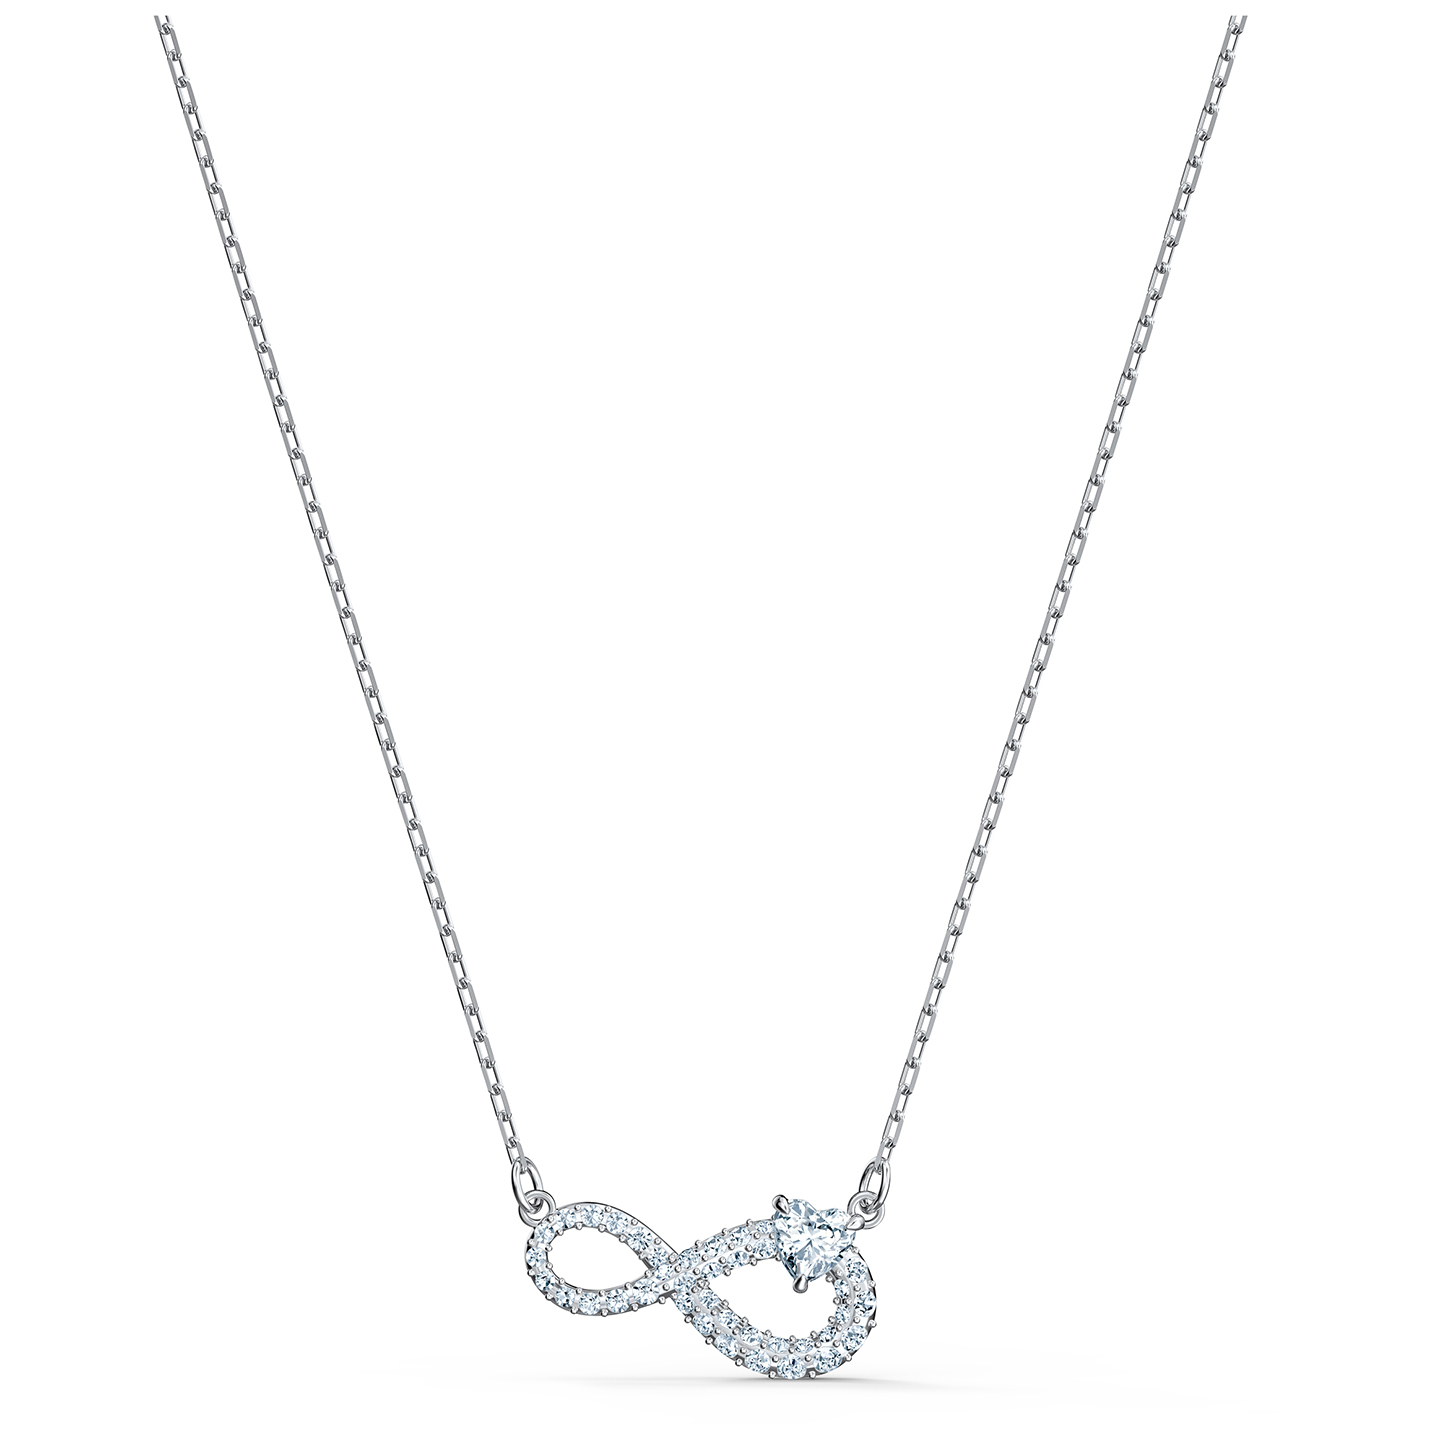 Swarovski Swarovski Infinity Necklace - White - Rhodium Plated